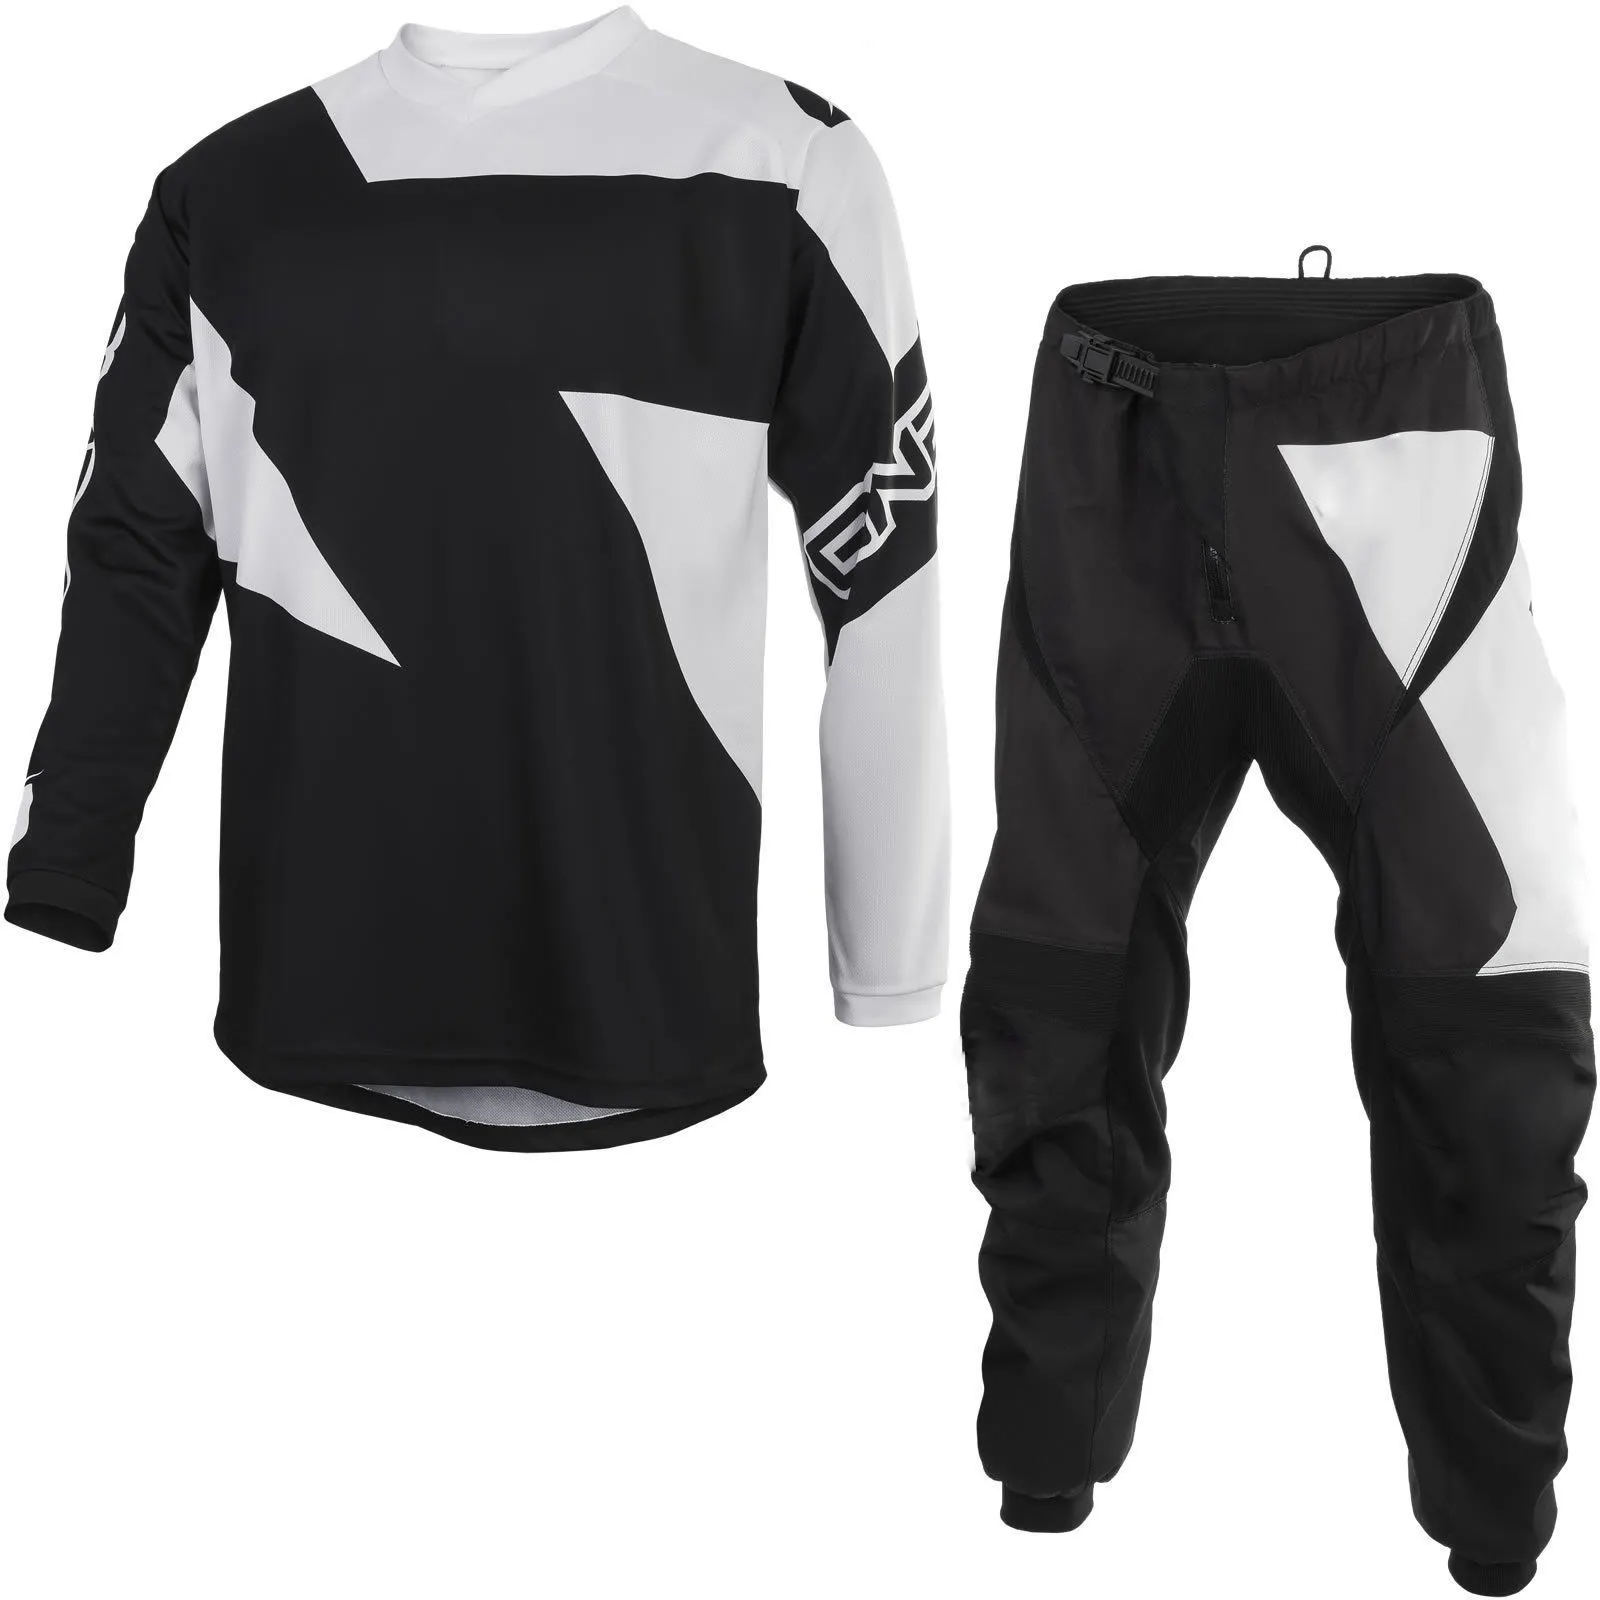 Di alta Qualità Motocross suit set Shirt e pantaloni personalizzata di marca/Sublimazione su misura di disegno moto motocross suit